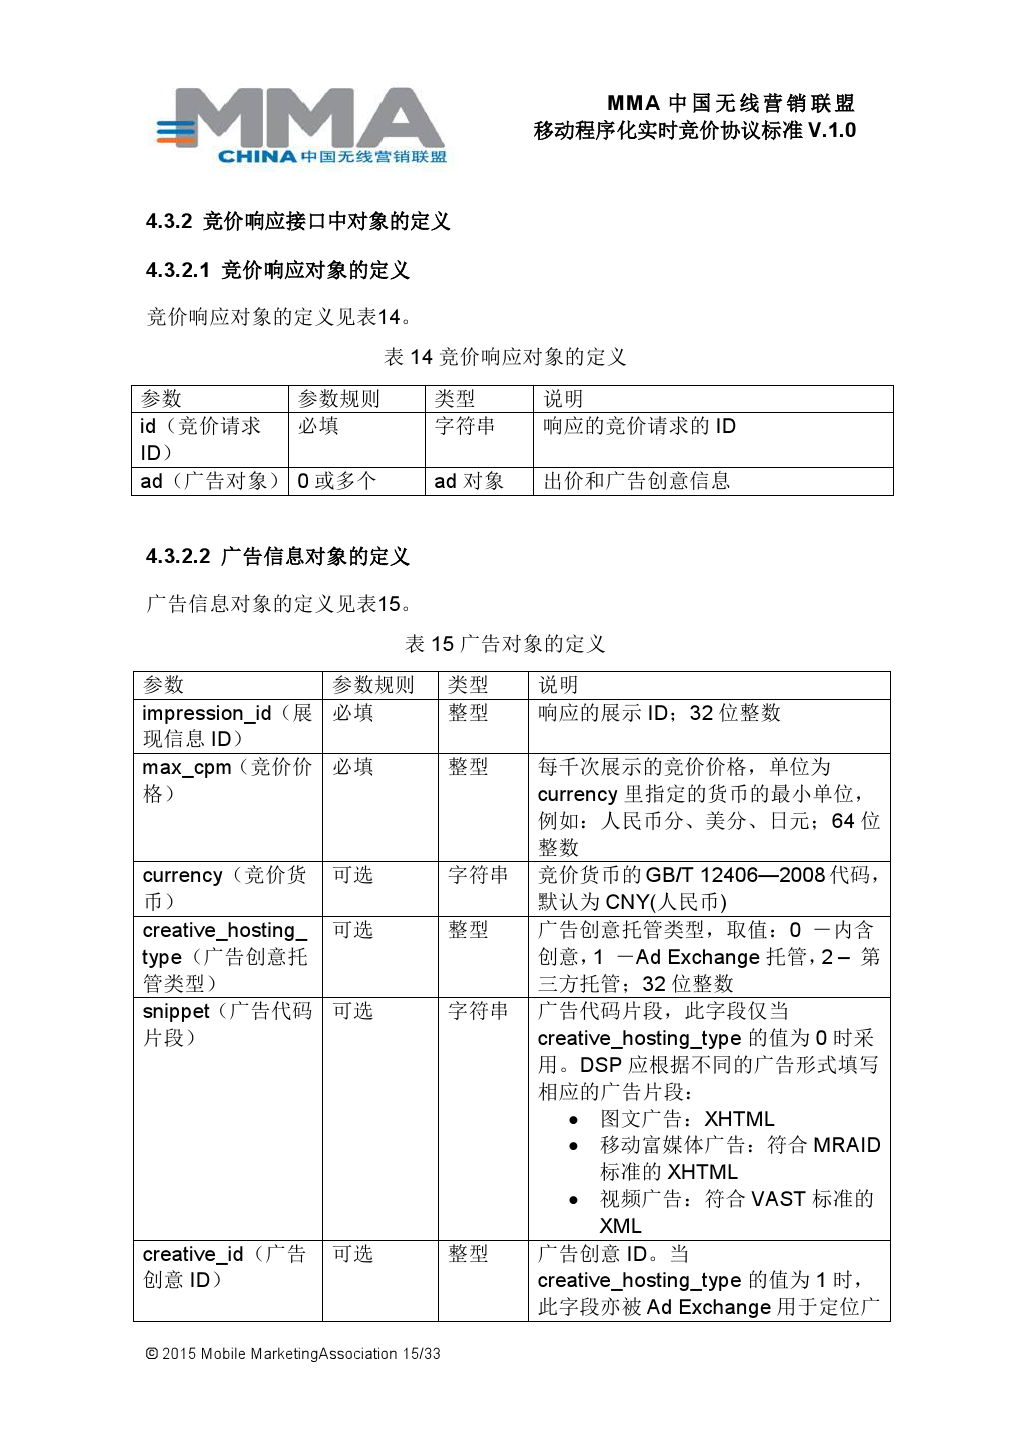 MMA中国无线营销联盟移动程序化实时竞价协议标准V.1.0_000016